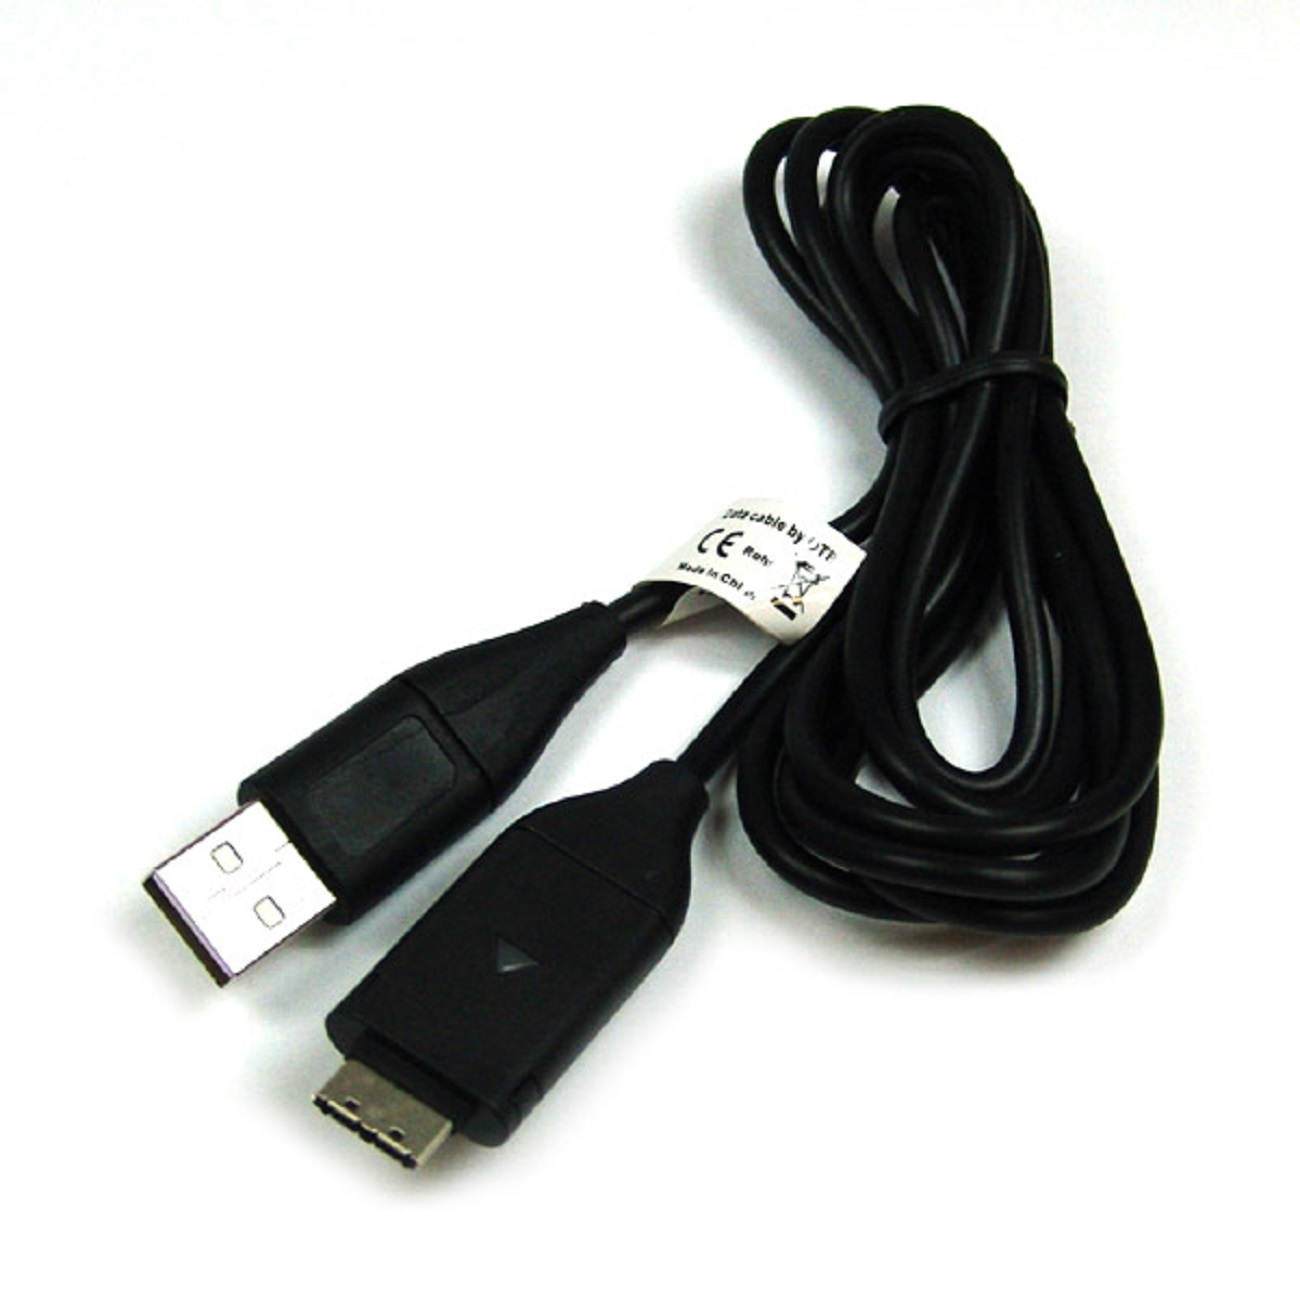 Samsung, ES55 kompatibel schwarz MOBILOTEC USB-Ladekabel Zubehör mit Samsung